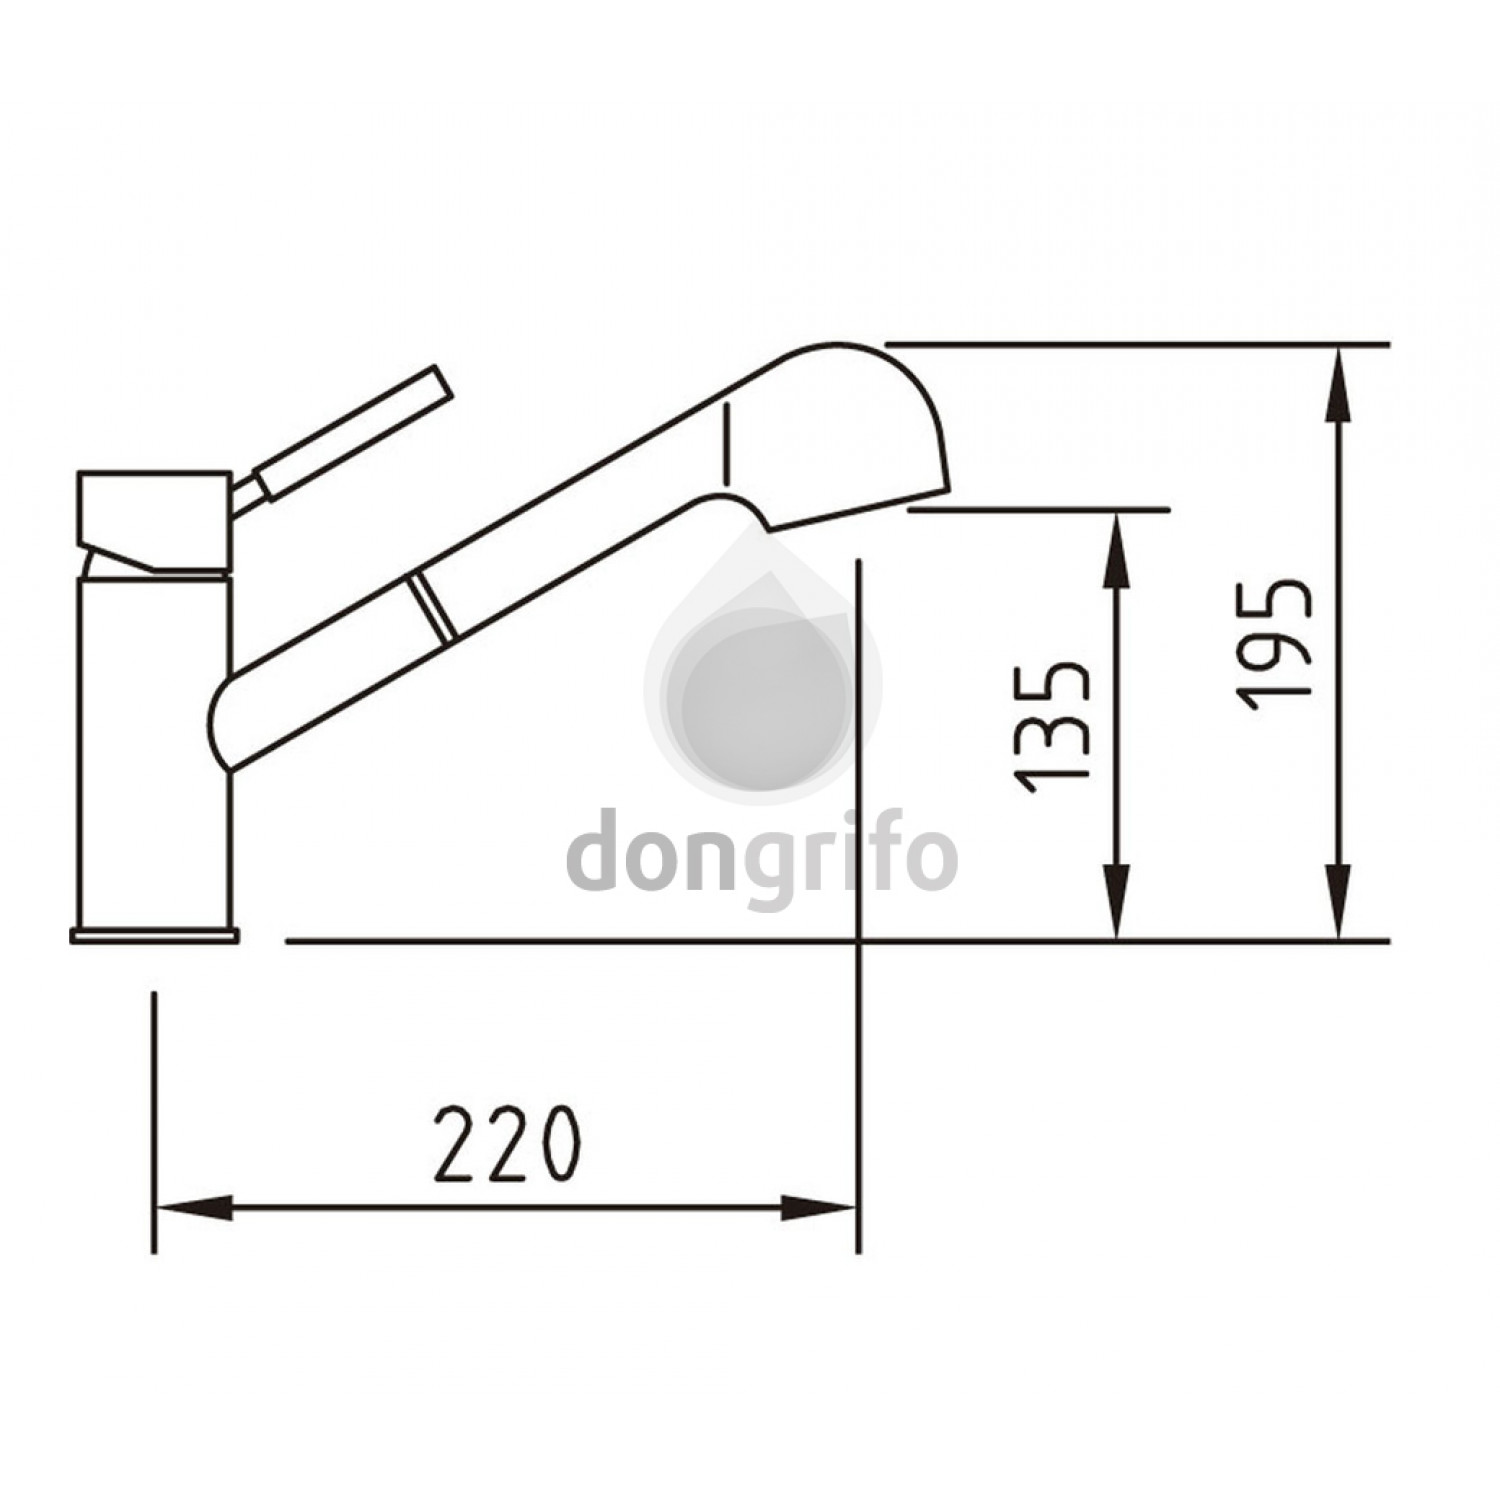 soporte para grifo de cocina fregadero dongrifo clv-97688